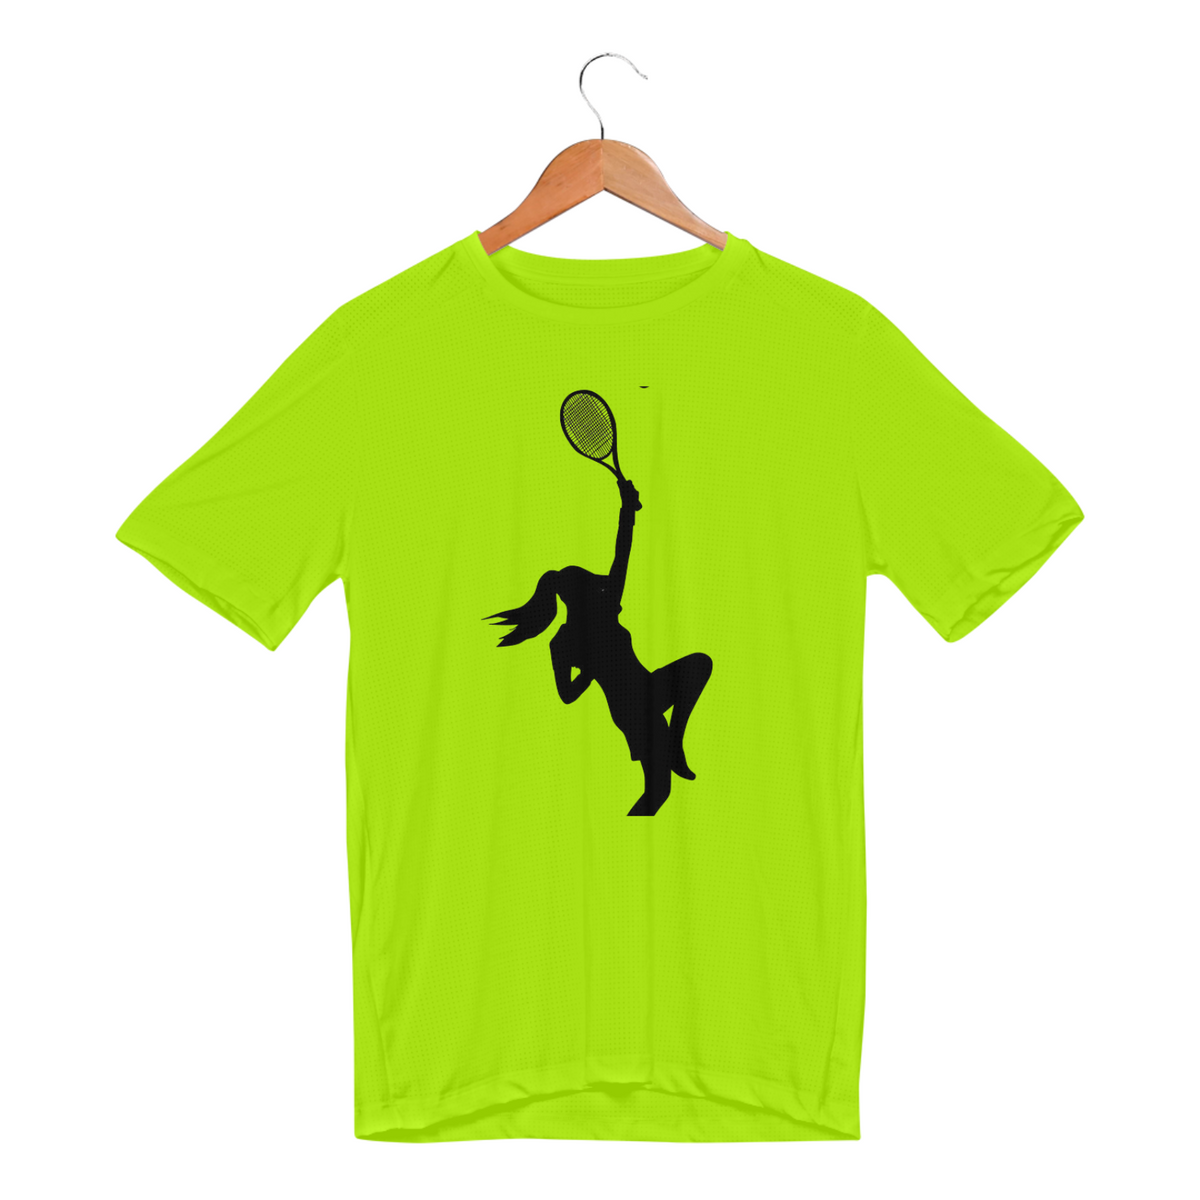 Nome do produto: Camiseta Esporte Dry UV - Tenis 